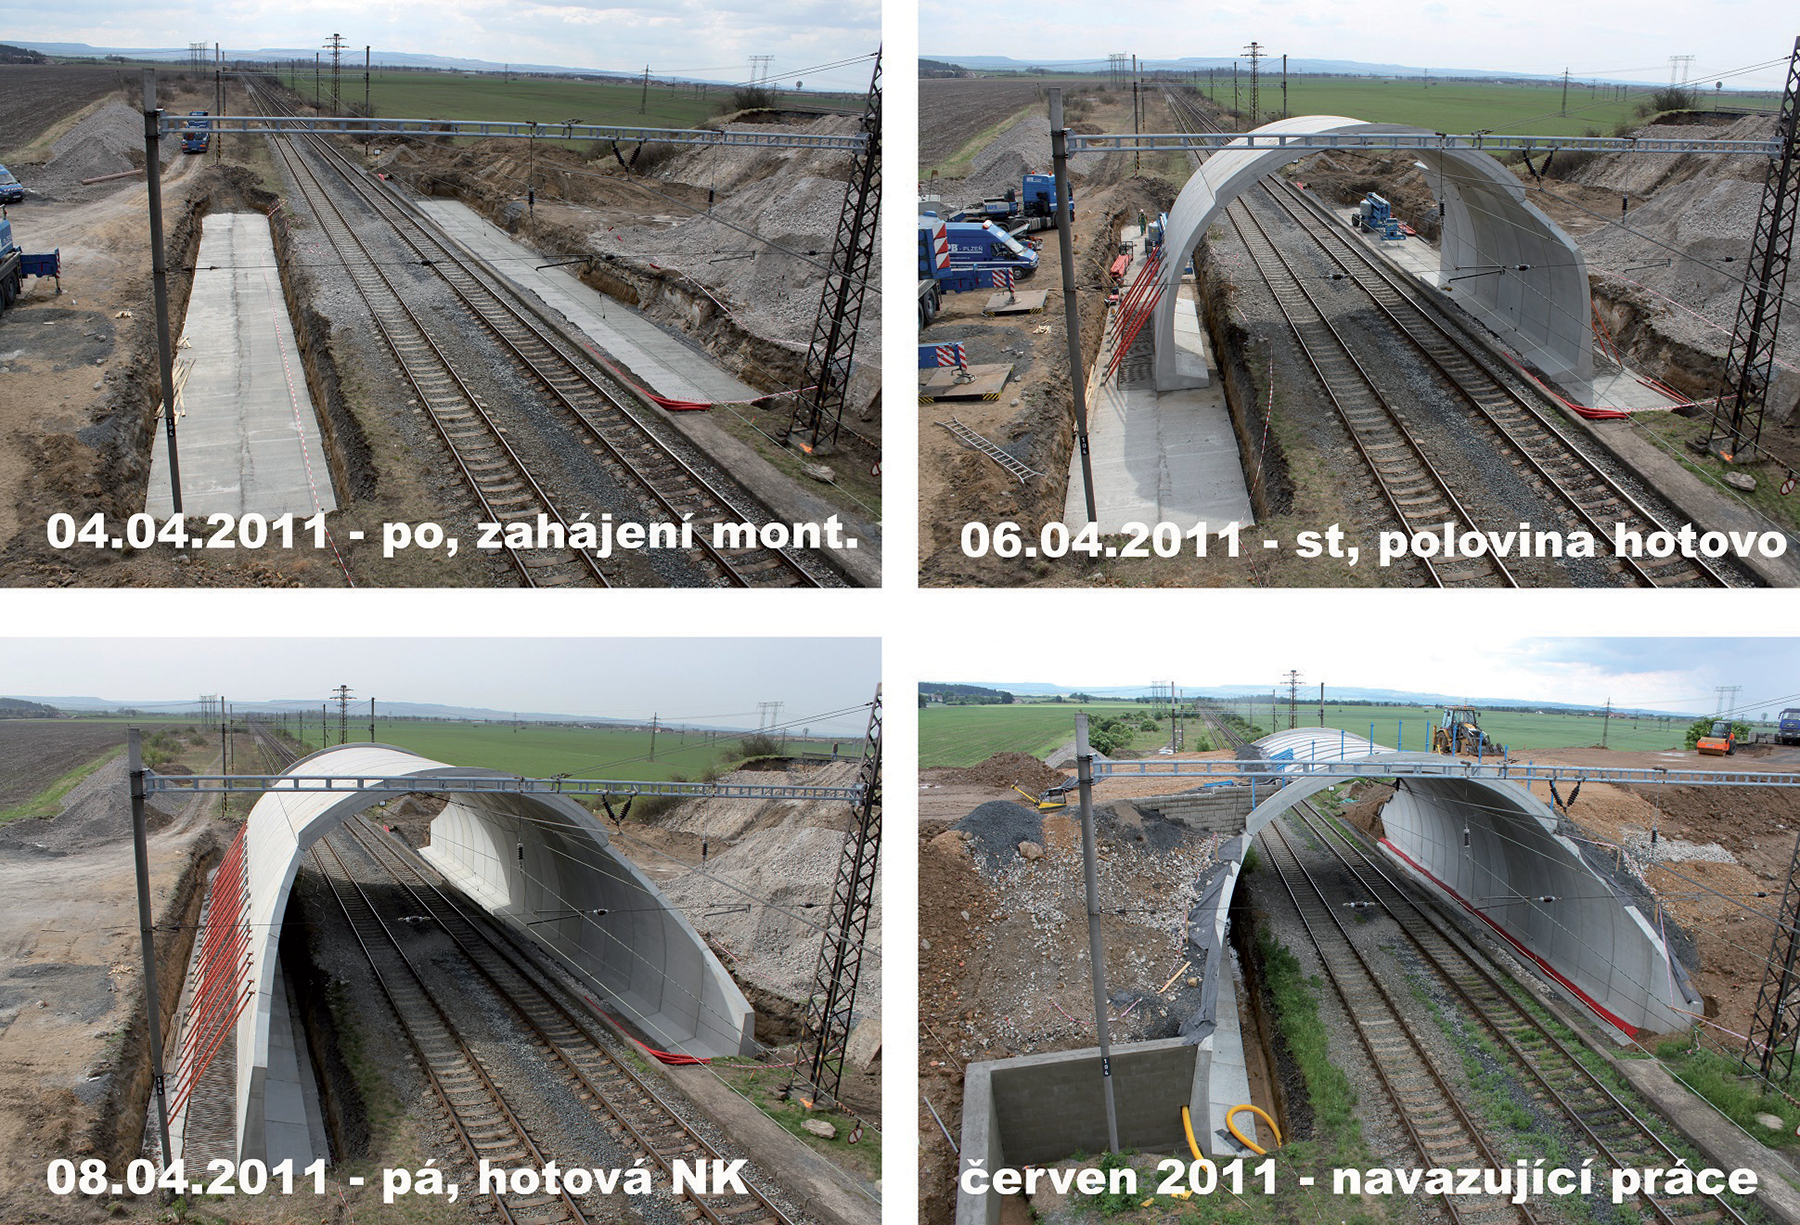 Postup výstavby silničního mostu nad tratí poblíž Vyškova – montáž prefabrikované klenby probíhala od pondělí 4. 4. 2011 do pátku 8. 4. 2011.